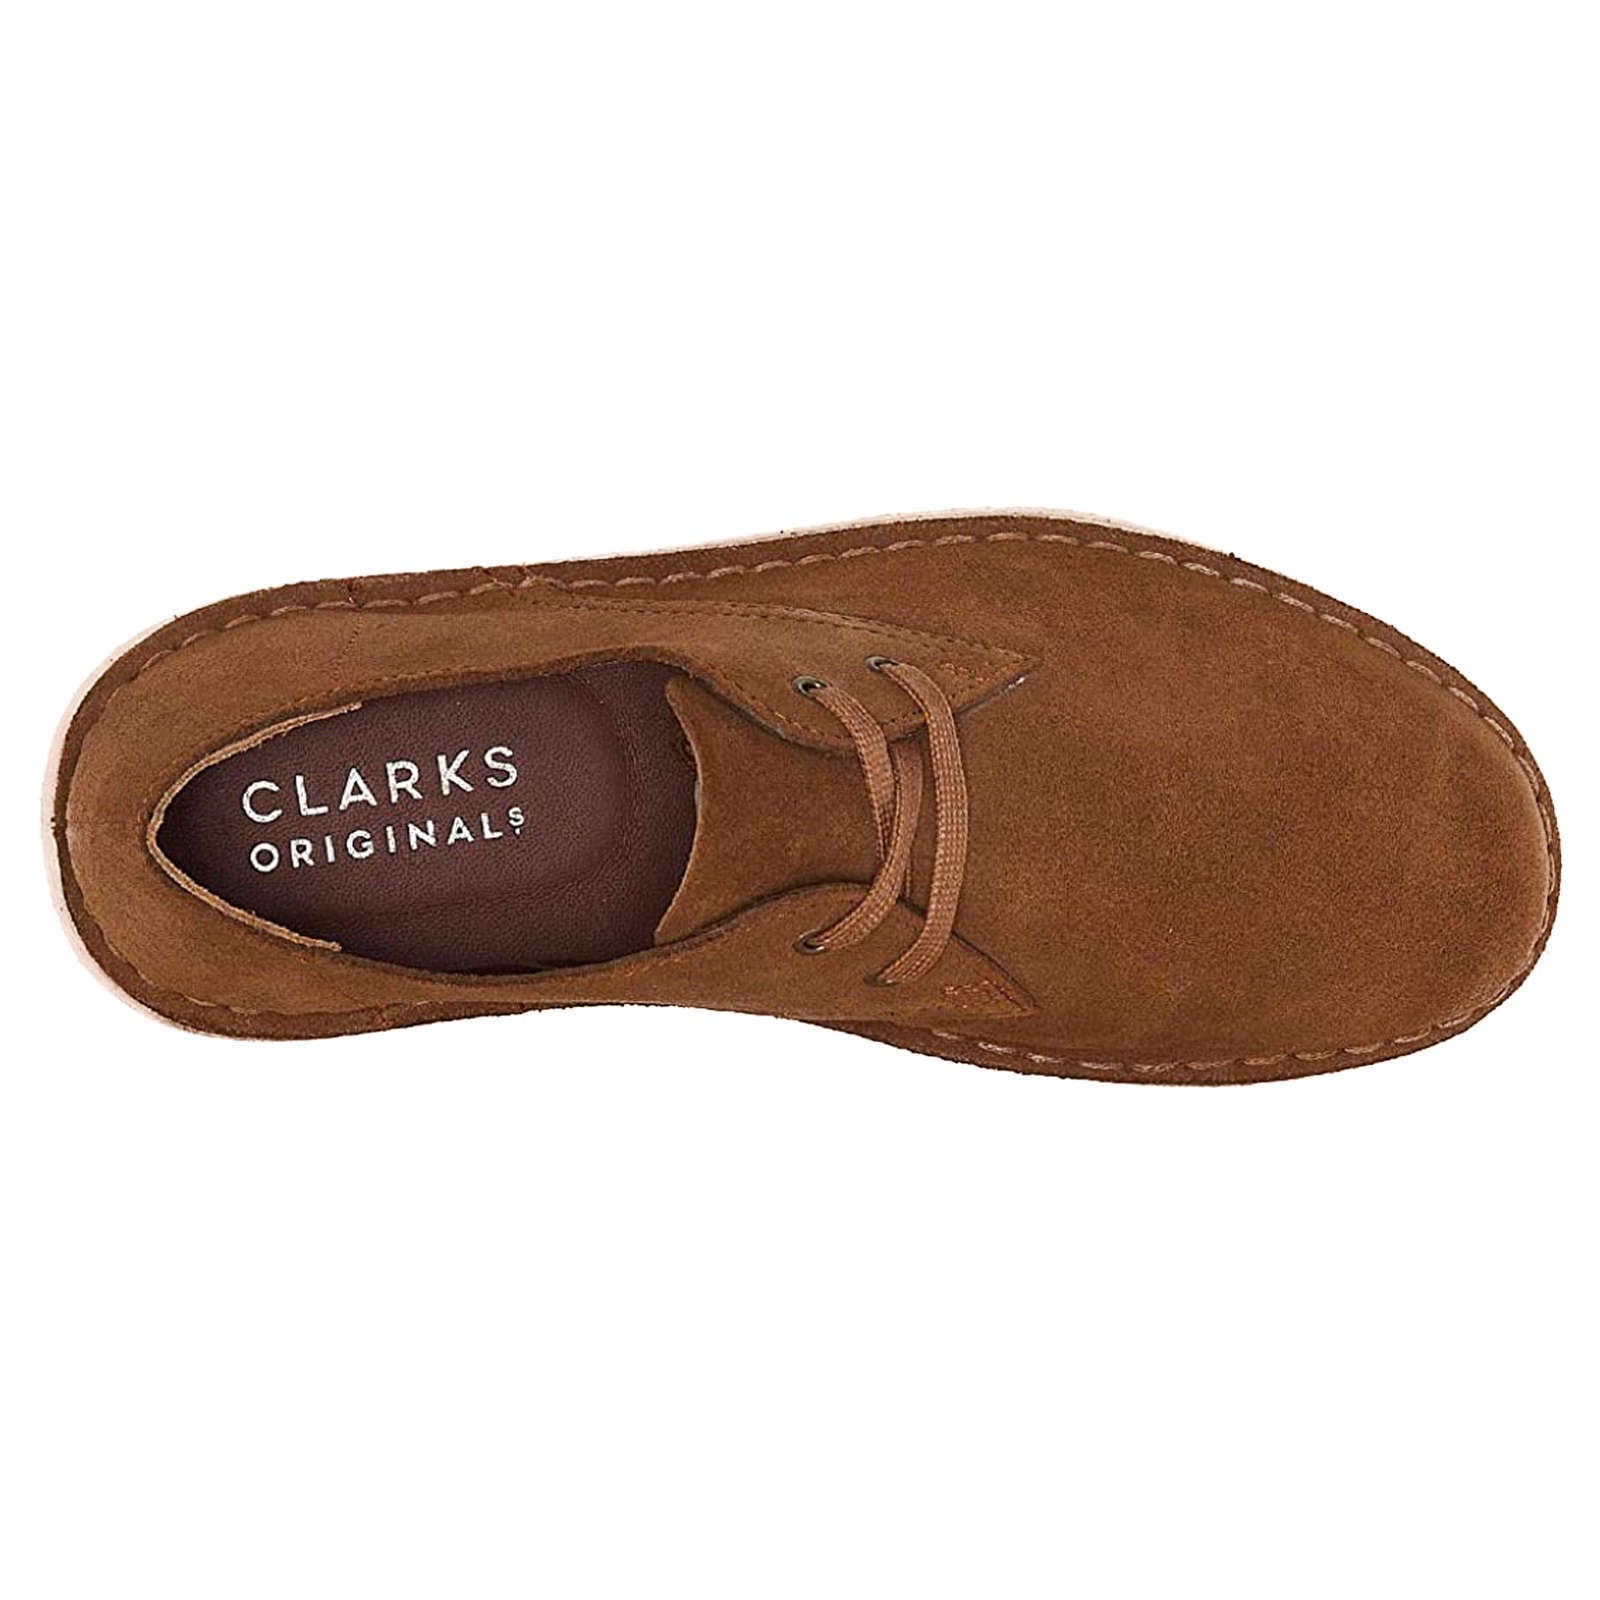 Clarks Originals Desert Khan Suede Leather Men's Shoes#color_cola